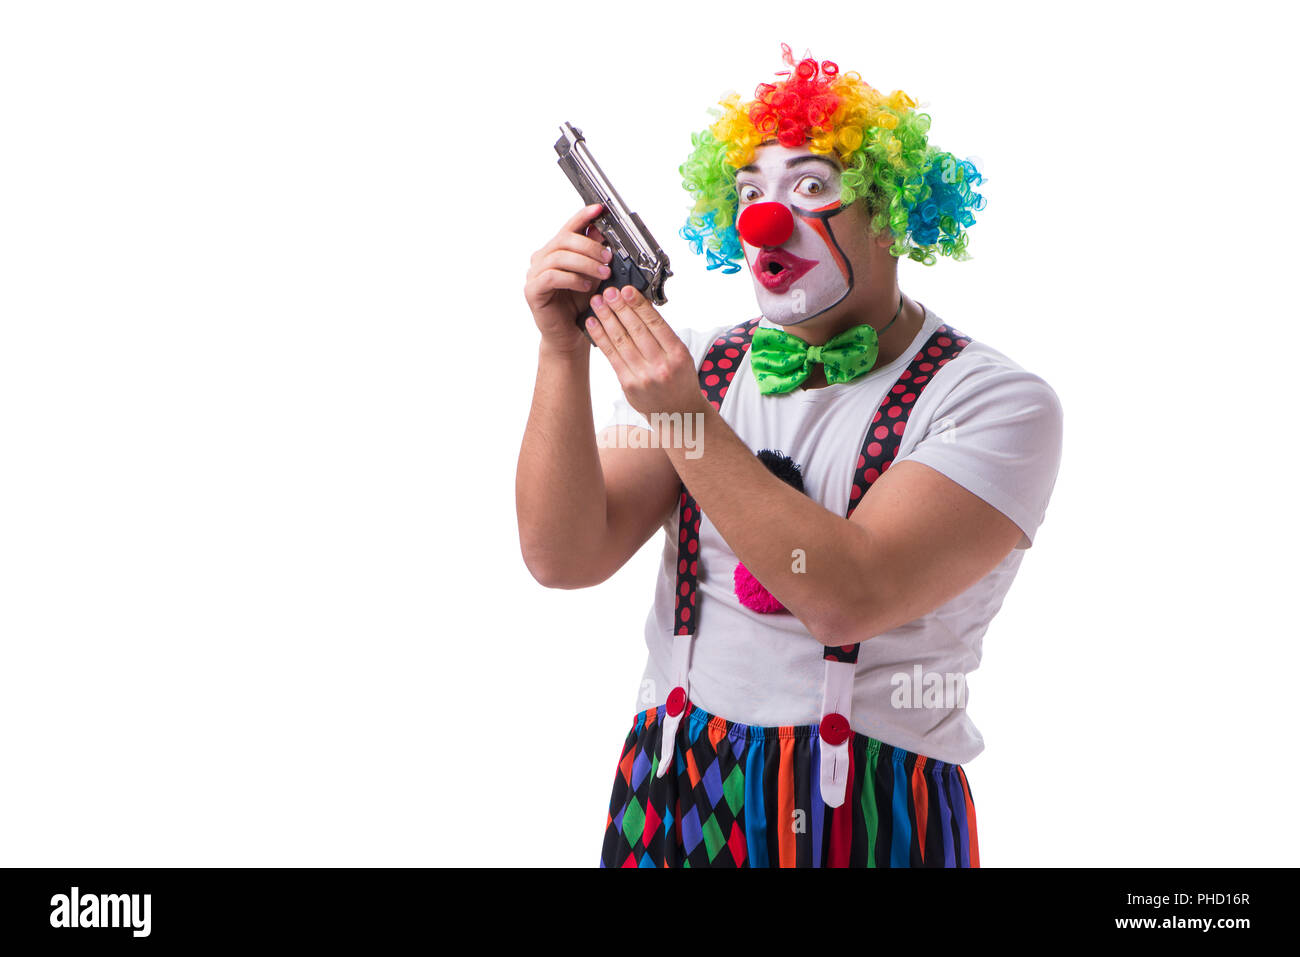 Funny clown avec un fusil pistolet isolé sur fond blanc Banque D'Images